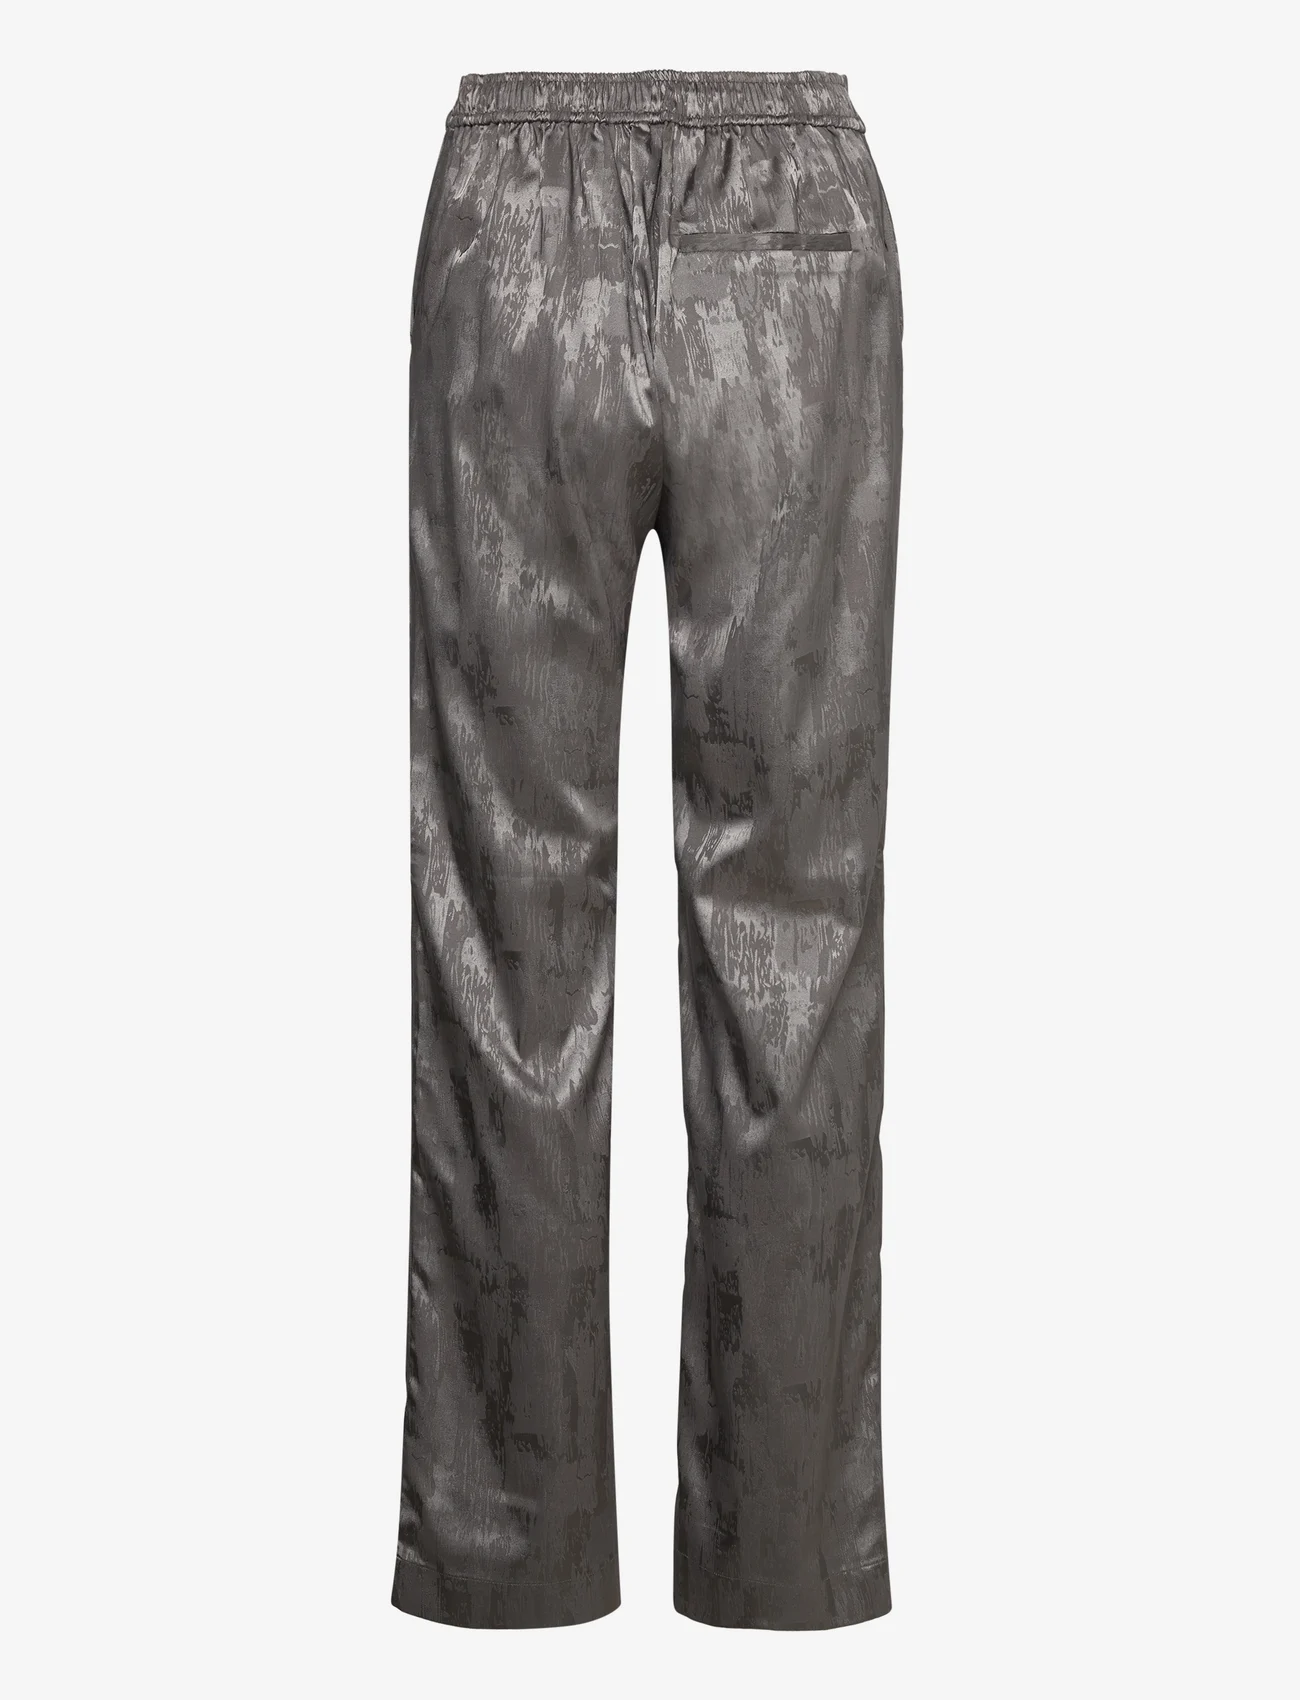 Levete Room - LR-ALMA - bukser med lige ben - l912 - steel grey - 1